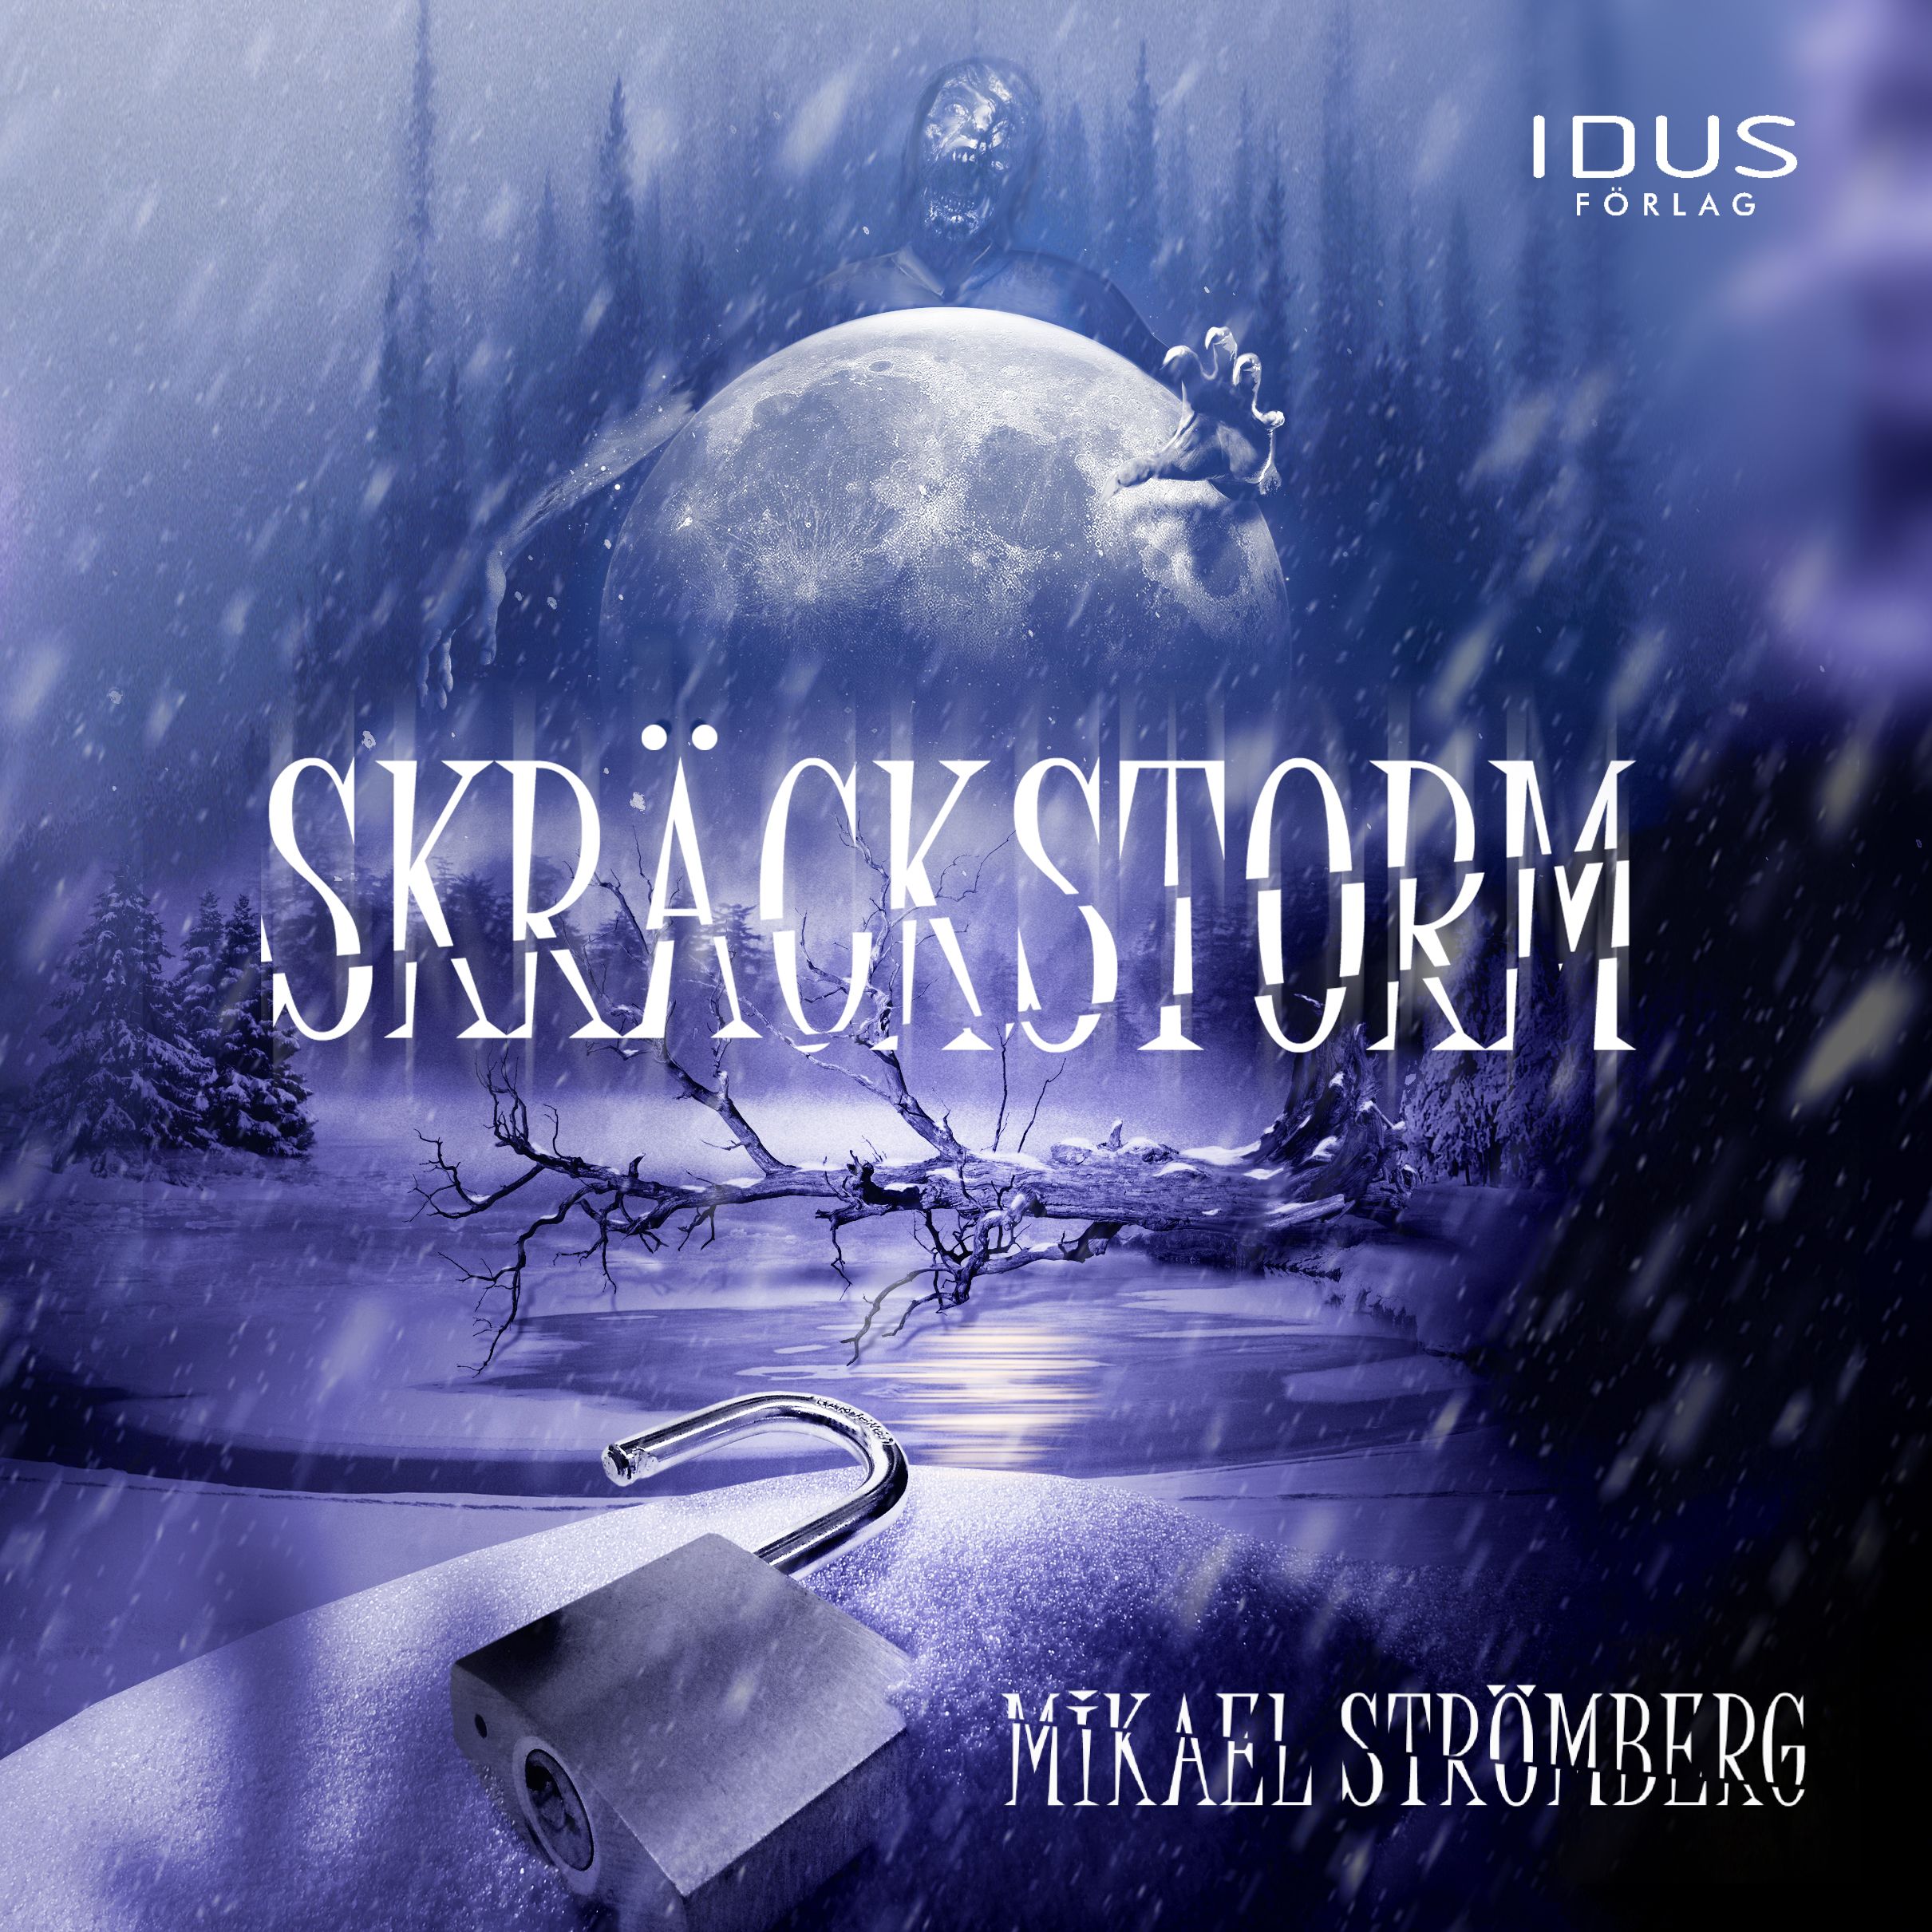 Skräckstorm, ljudbok av Mikael Strömberg